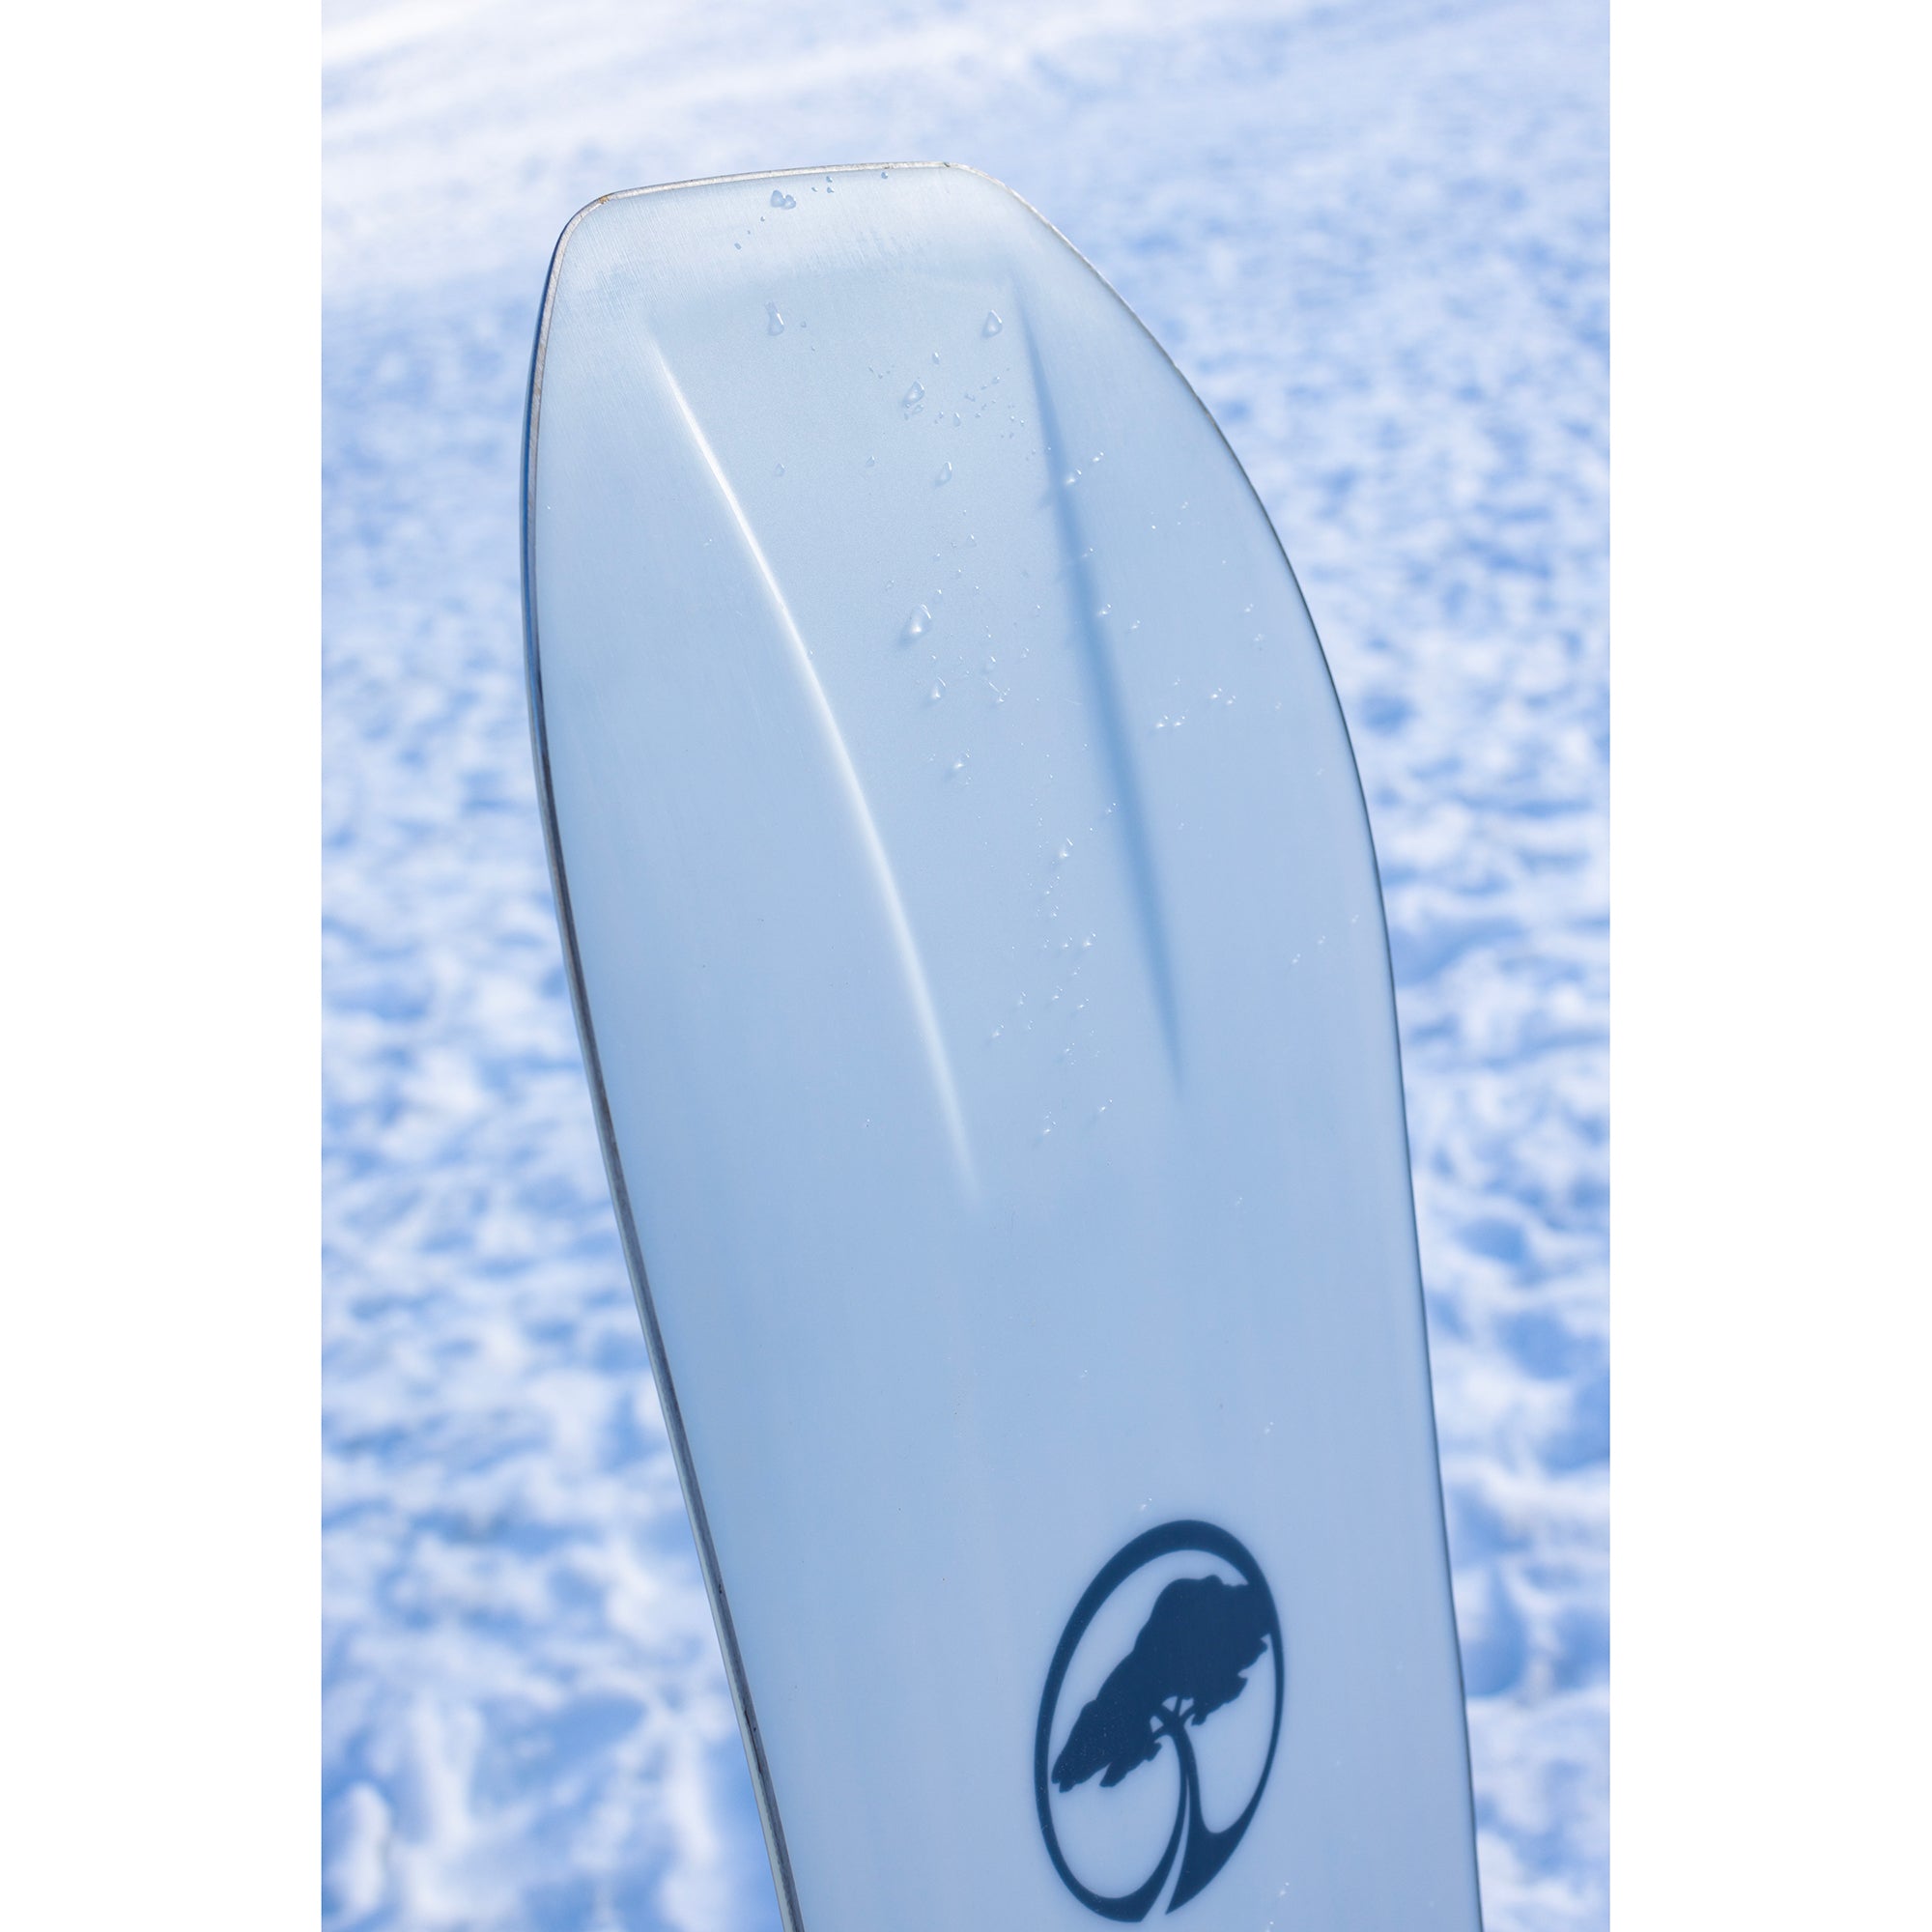 Arbor Men's Terra Twin Camber Snowboard 2024